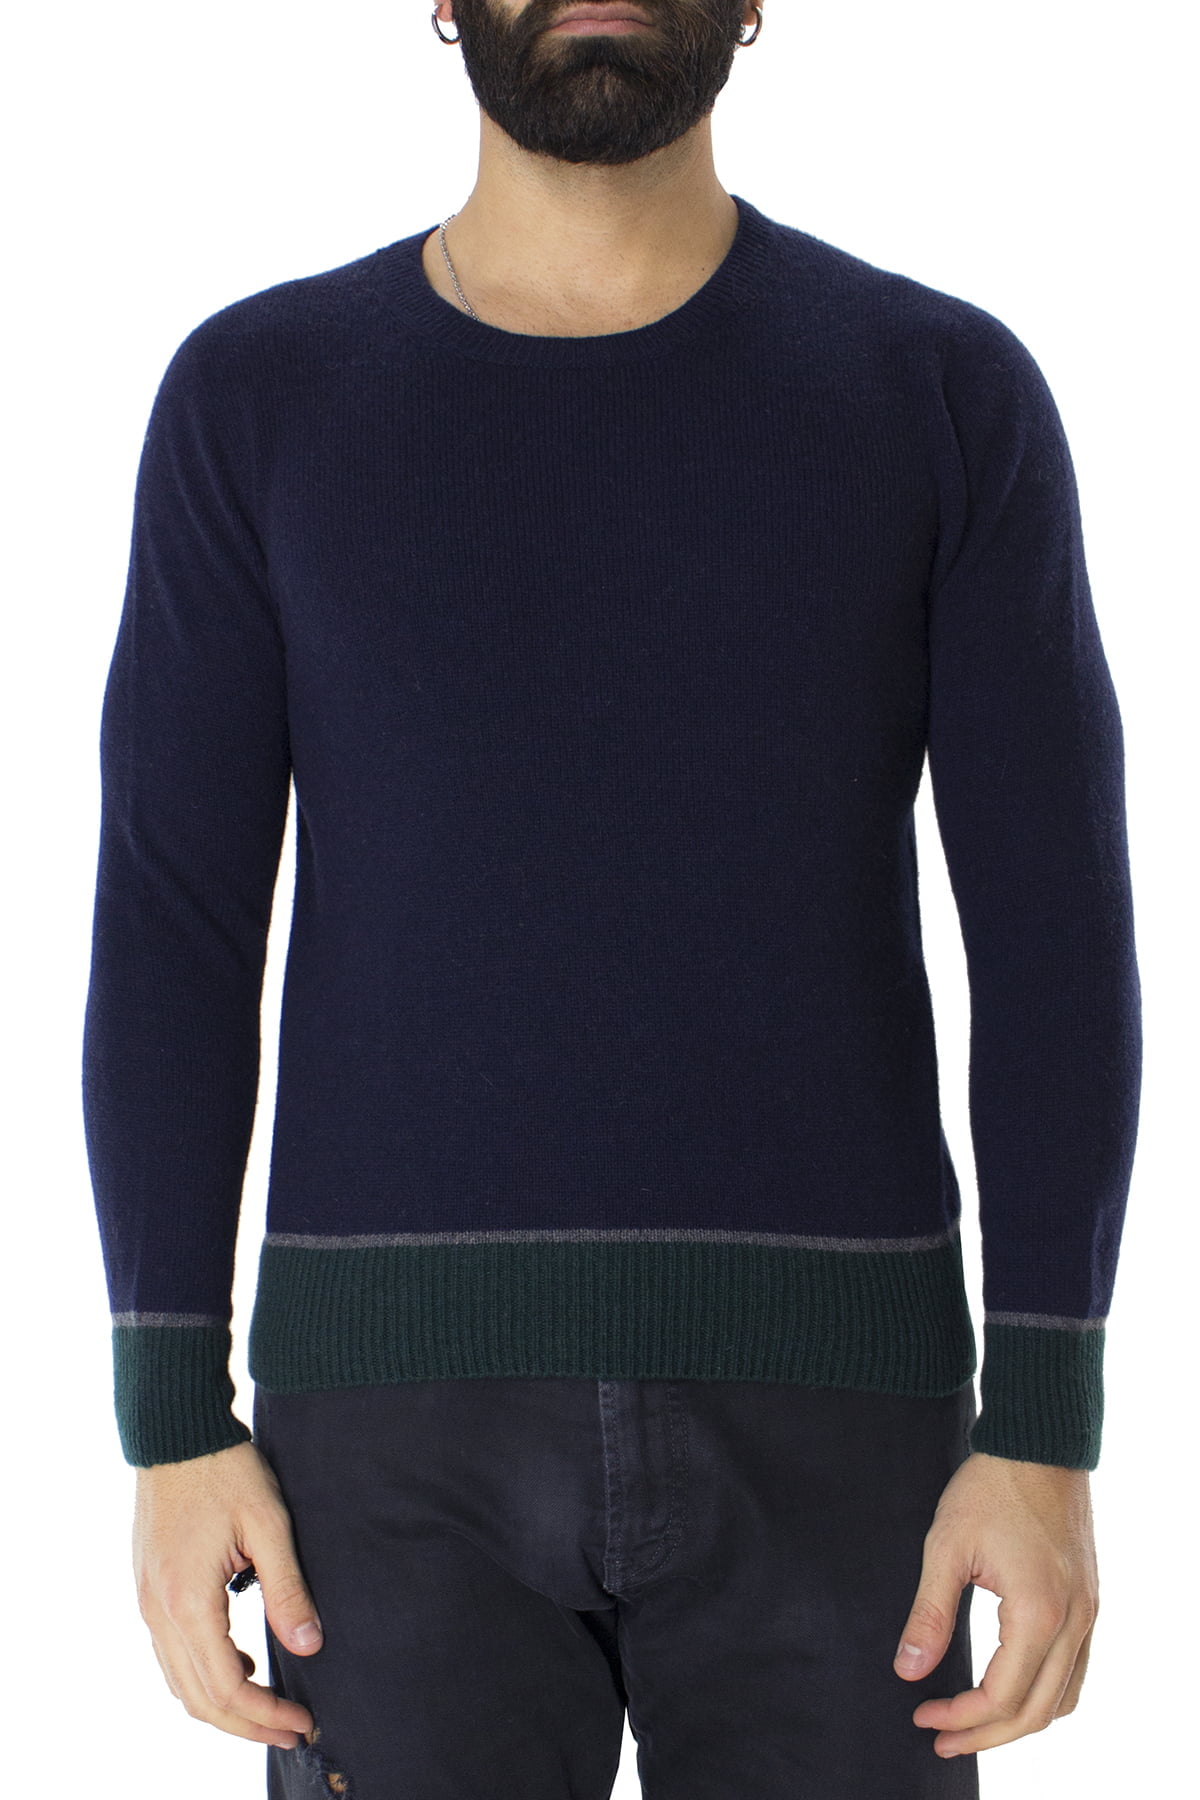 Maglione uomo Girocollo blu in lana con righe sul fondo slim fit made in italy